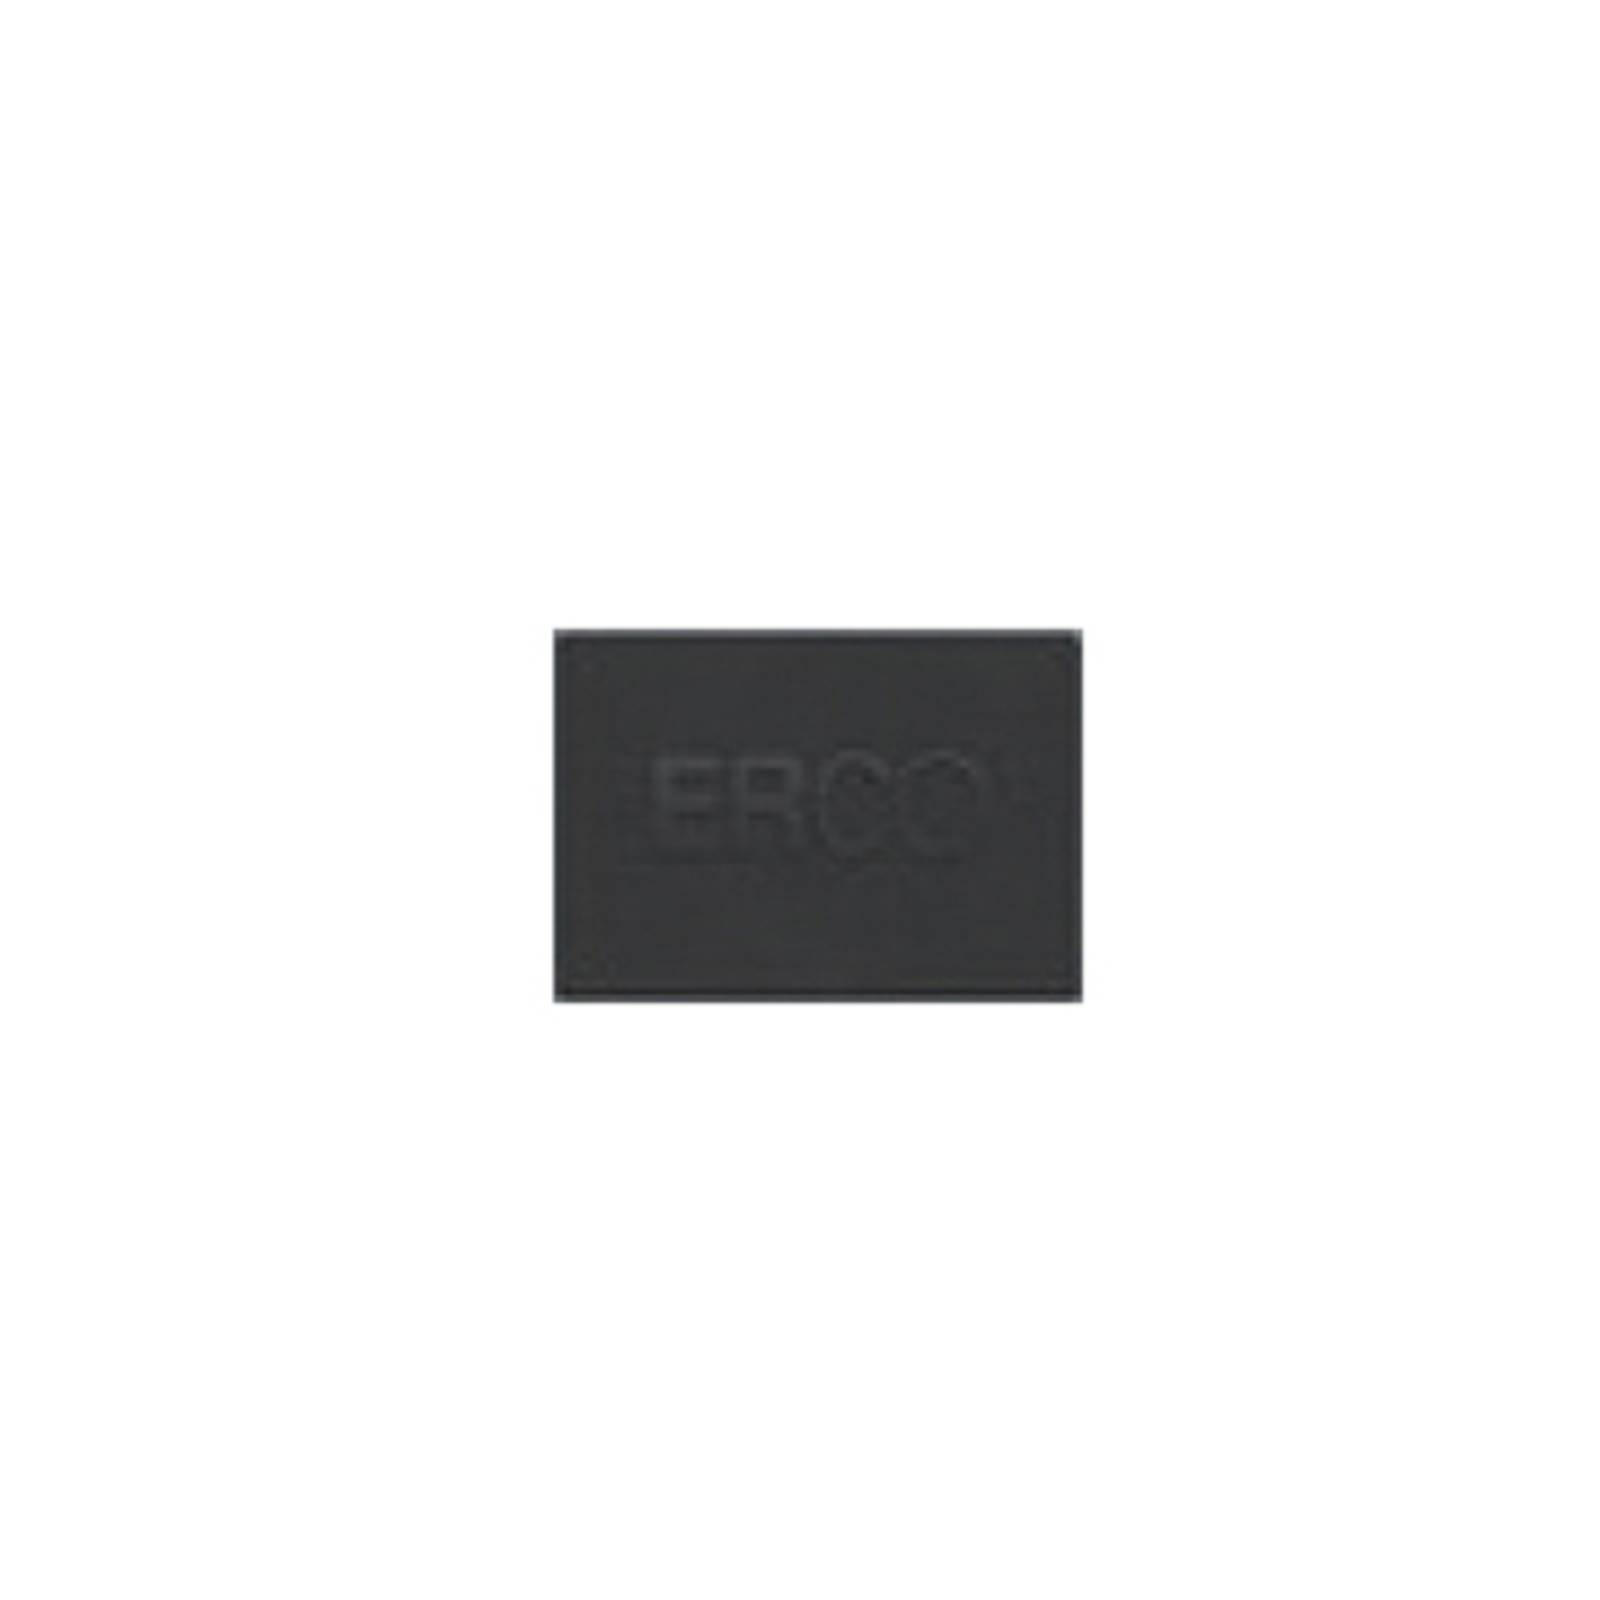 ERCO endeplade til Minirail-skinne sort